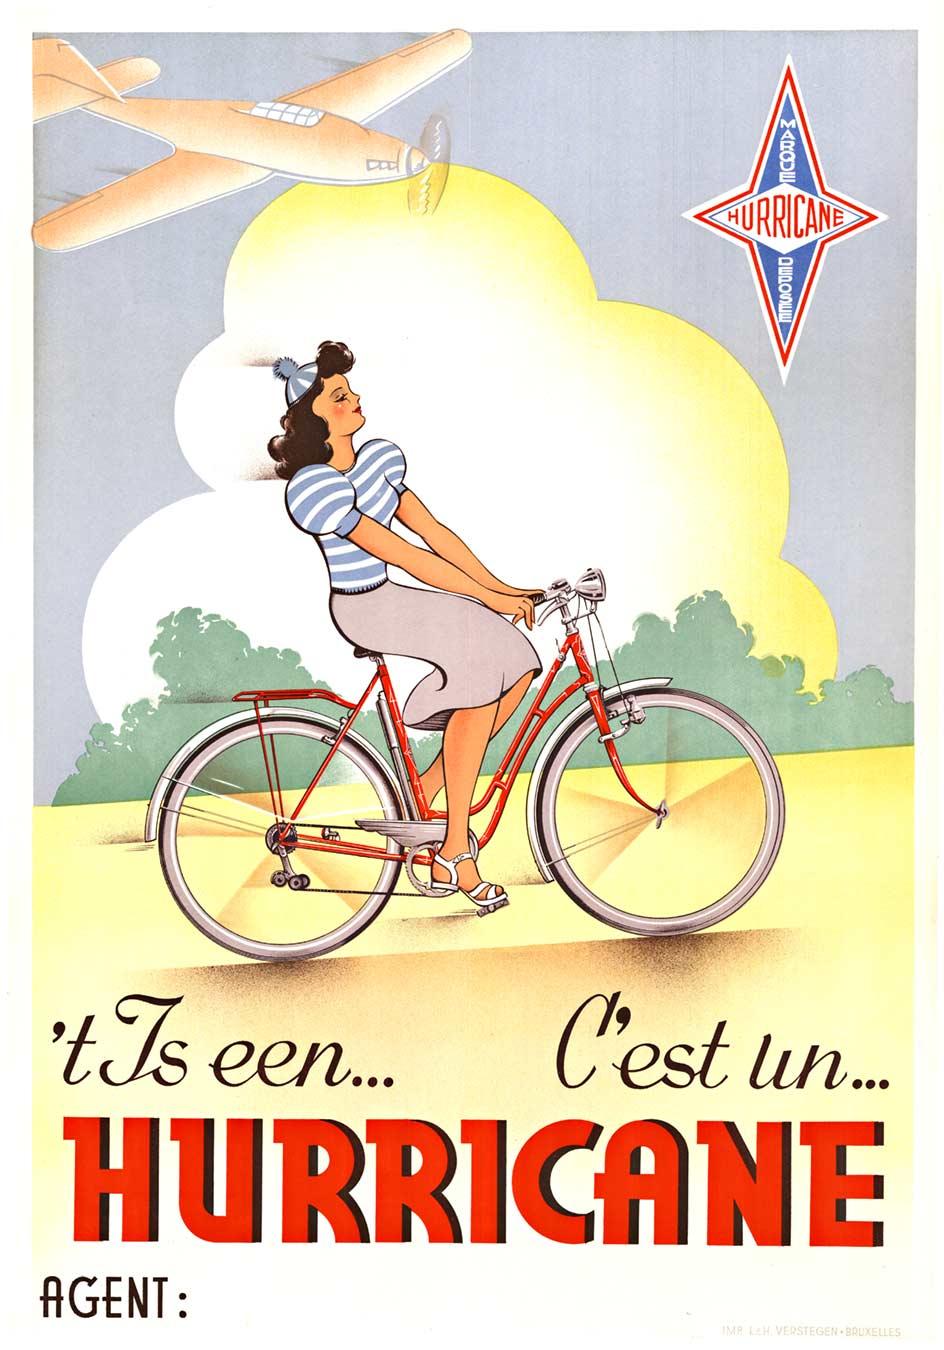 Affiche originale "C'est un Hurricane", style pin-up à bicyclette vintage